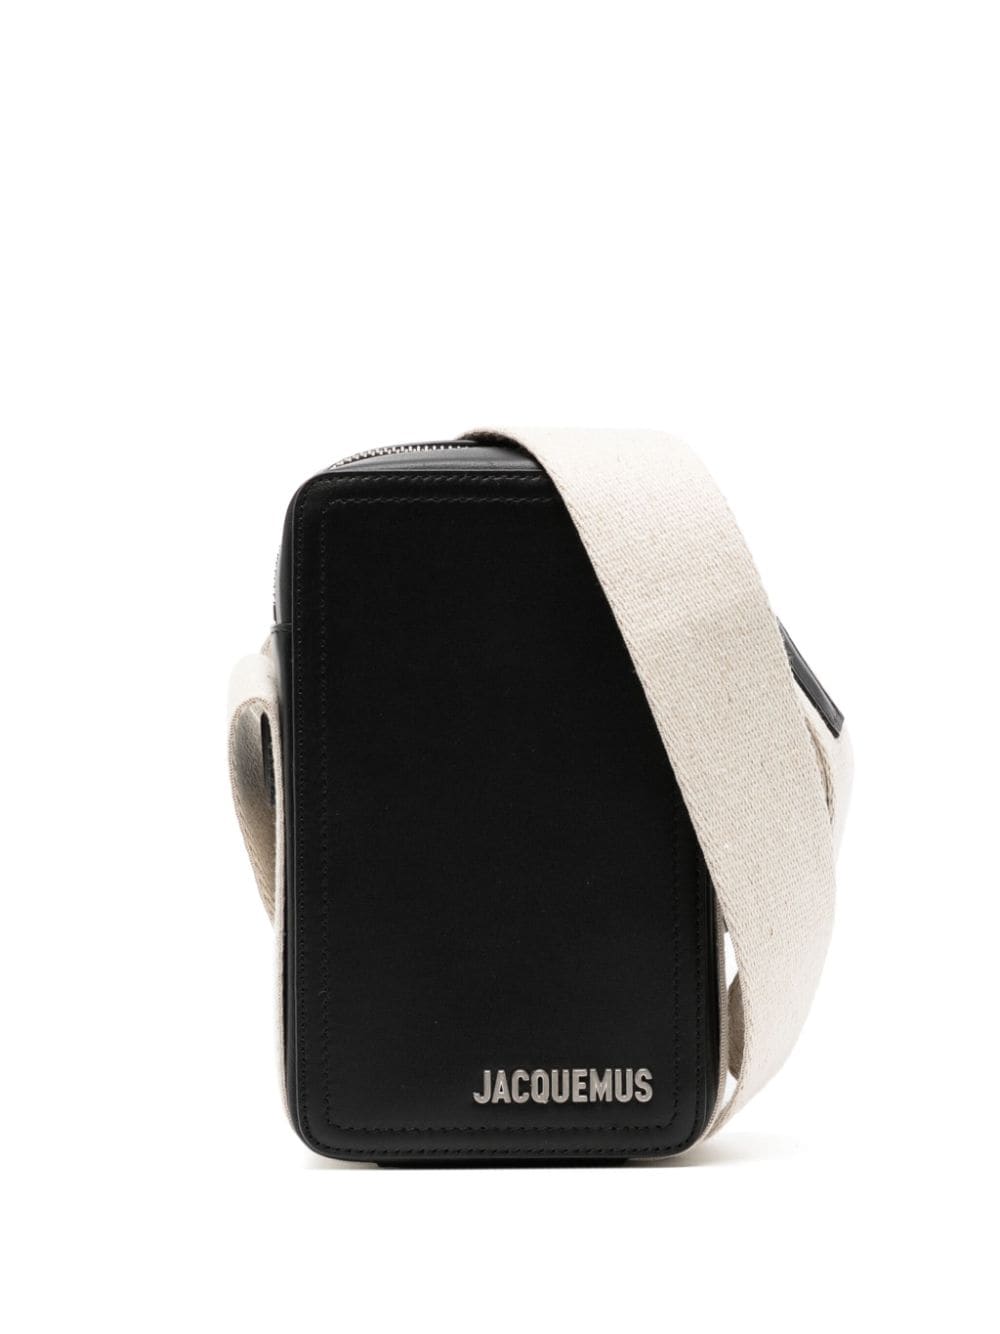 Jacquemus Le Cuerda Vertical cross body bag - Black von Jacquemus